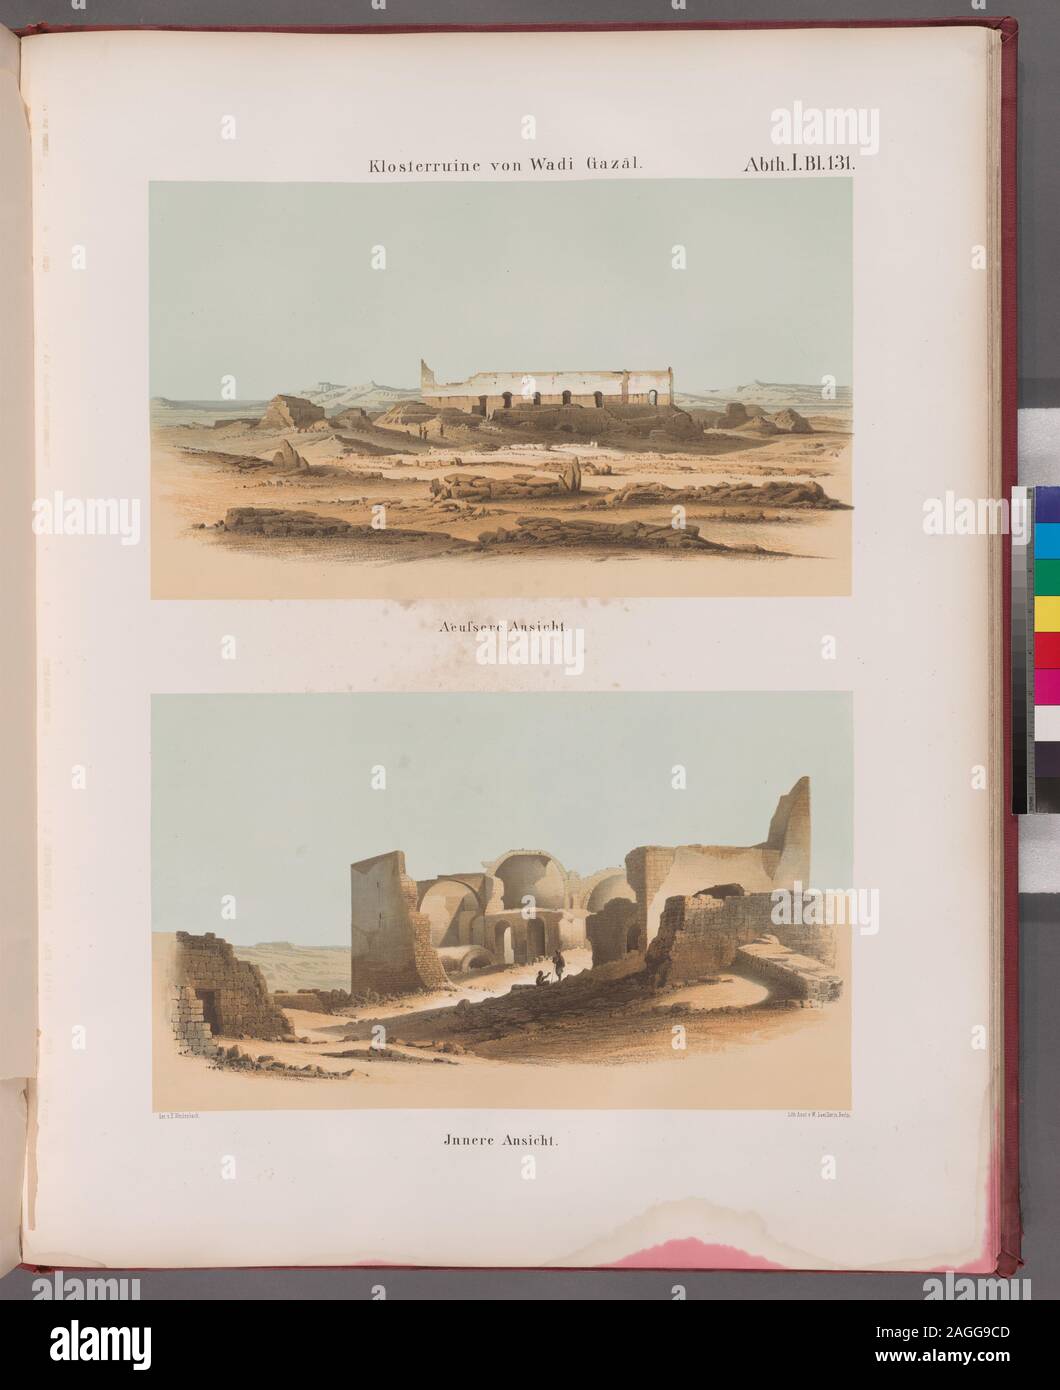 Klosterruine von Wadi Gazâl: Aeussere Ansicht, Innere Ansicht.; Klosterruine von Wadi Gazâl: Aeussere Ansicht, Innere Ansicht. Stock Photo